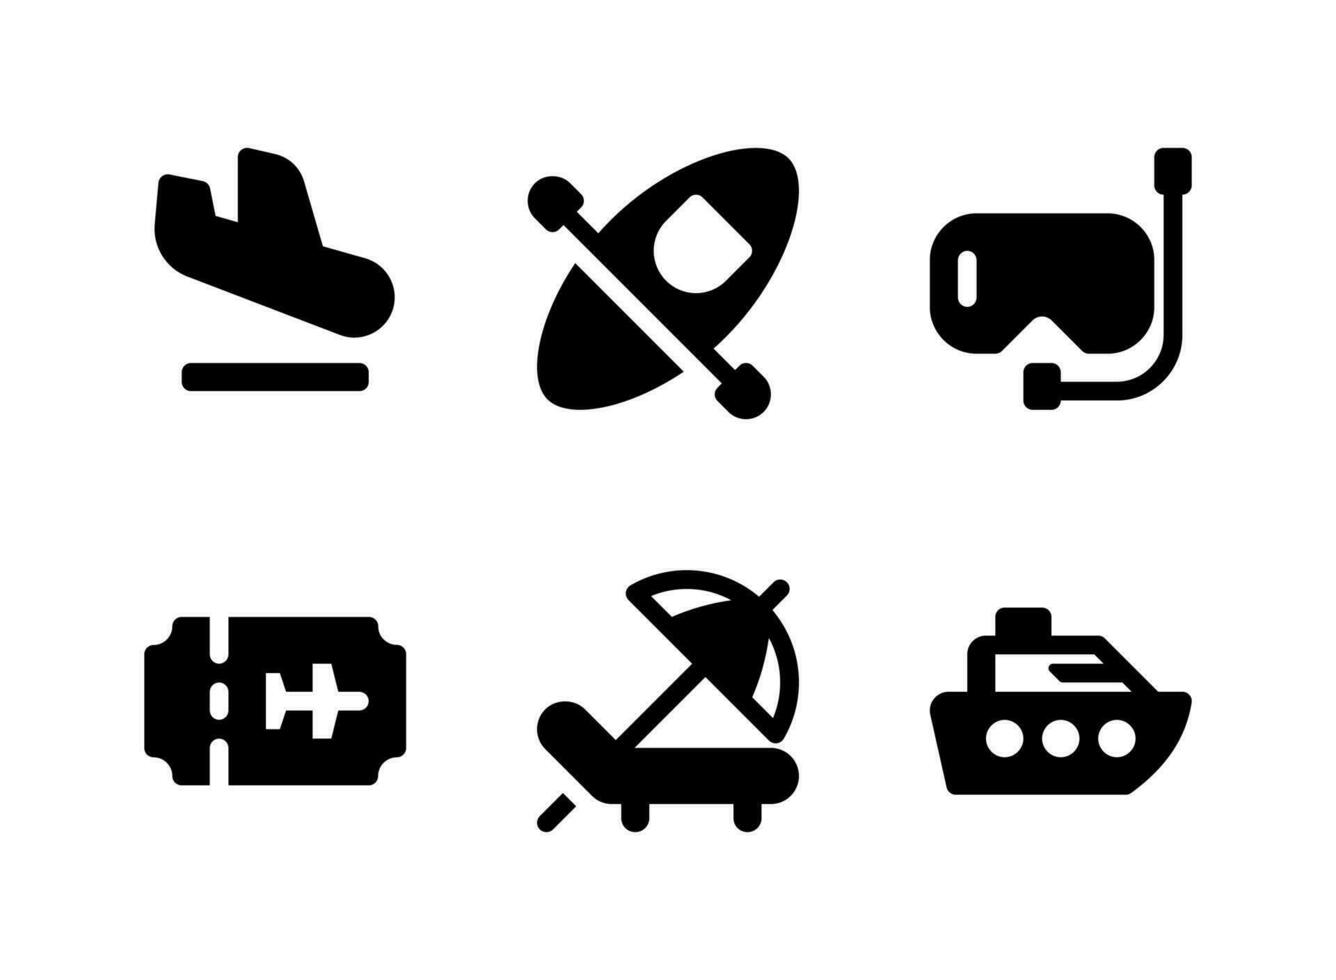 semplice set di icone solide vettoriali relative al viaggio